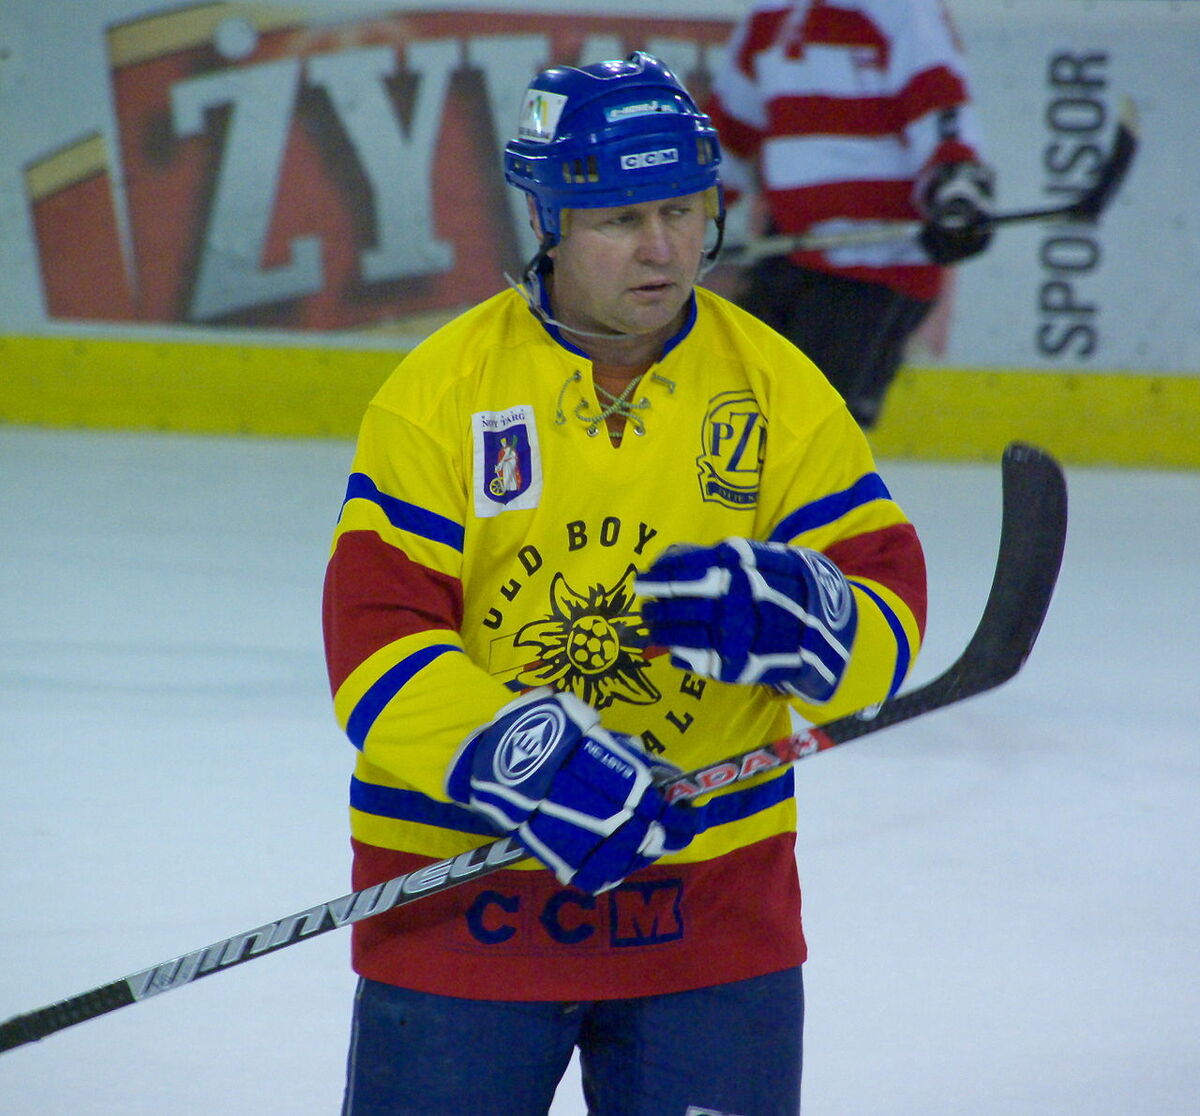 Category:Podhale Nowy Targ players, Ice Hockey Wiki